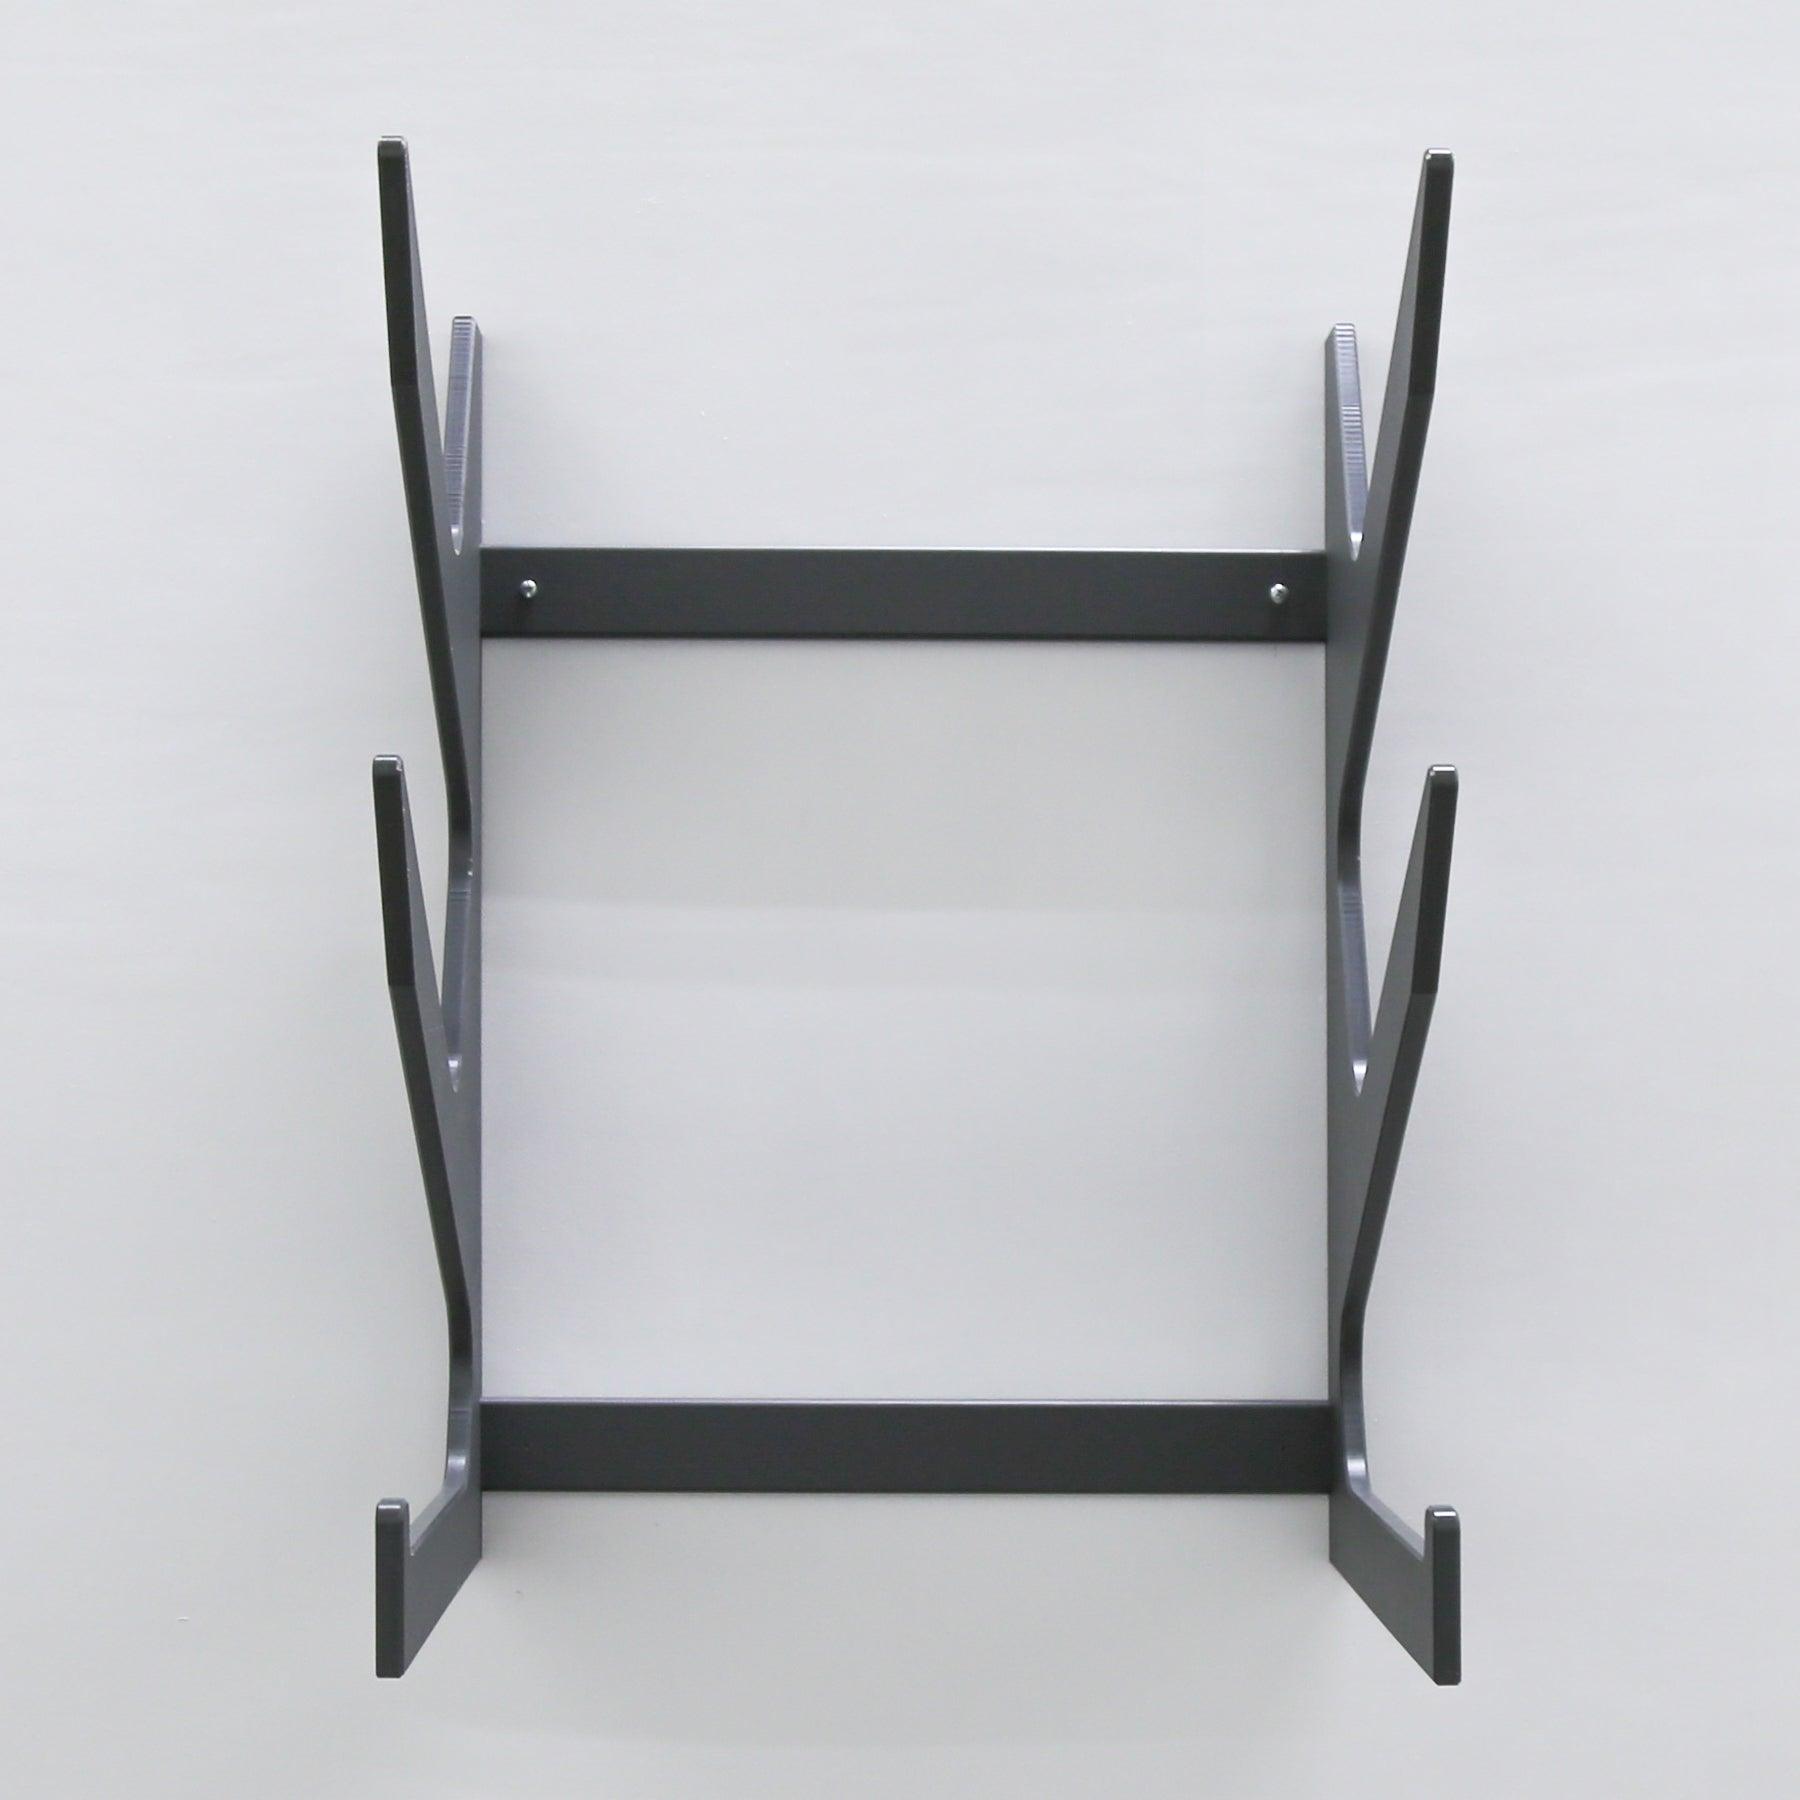 TRAPSKI Versa Deep Profile 2 Double Slot Plus Base Chair Rack - TRAPSKI, LLC